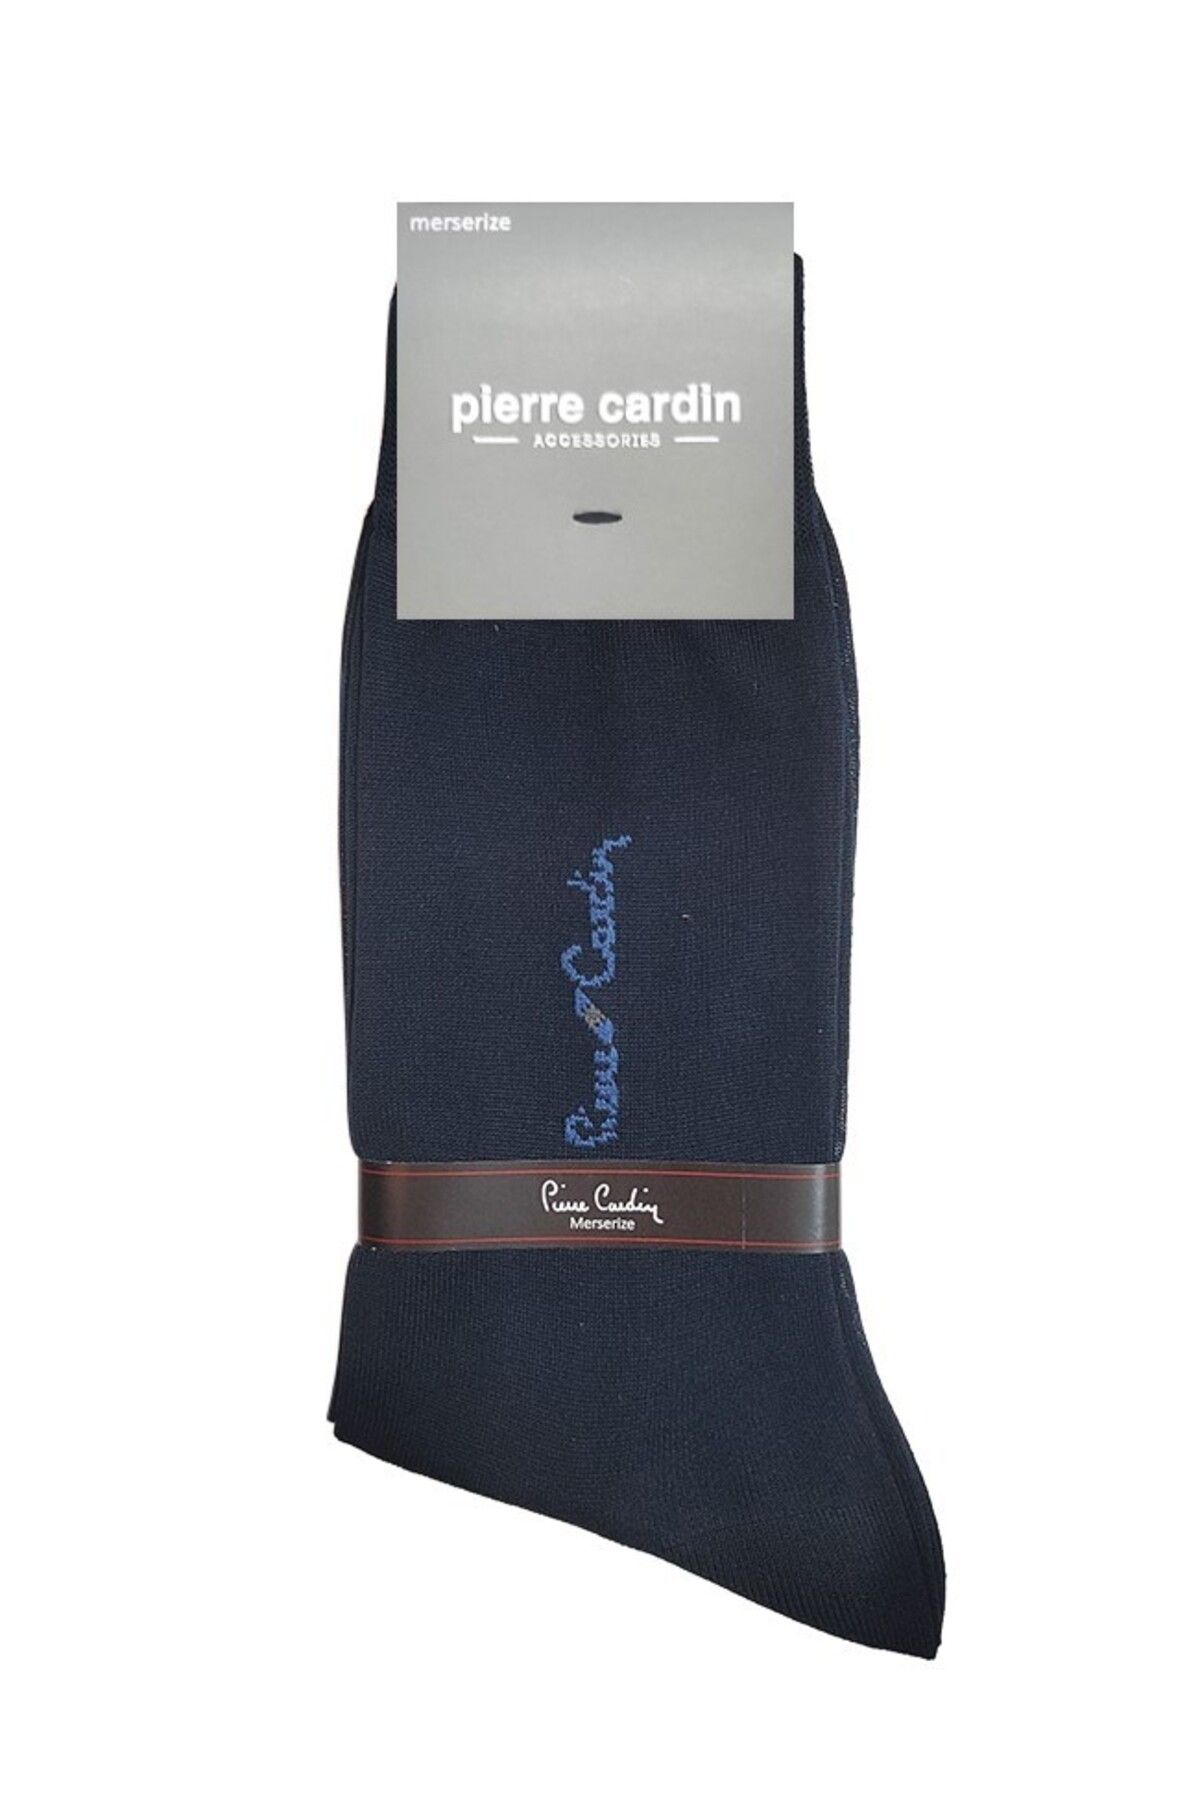 Pierre Cardin Akaa Erkek Merserize Çorap 152